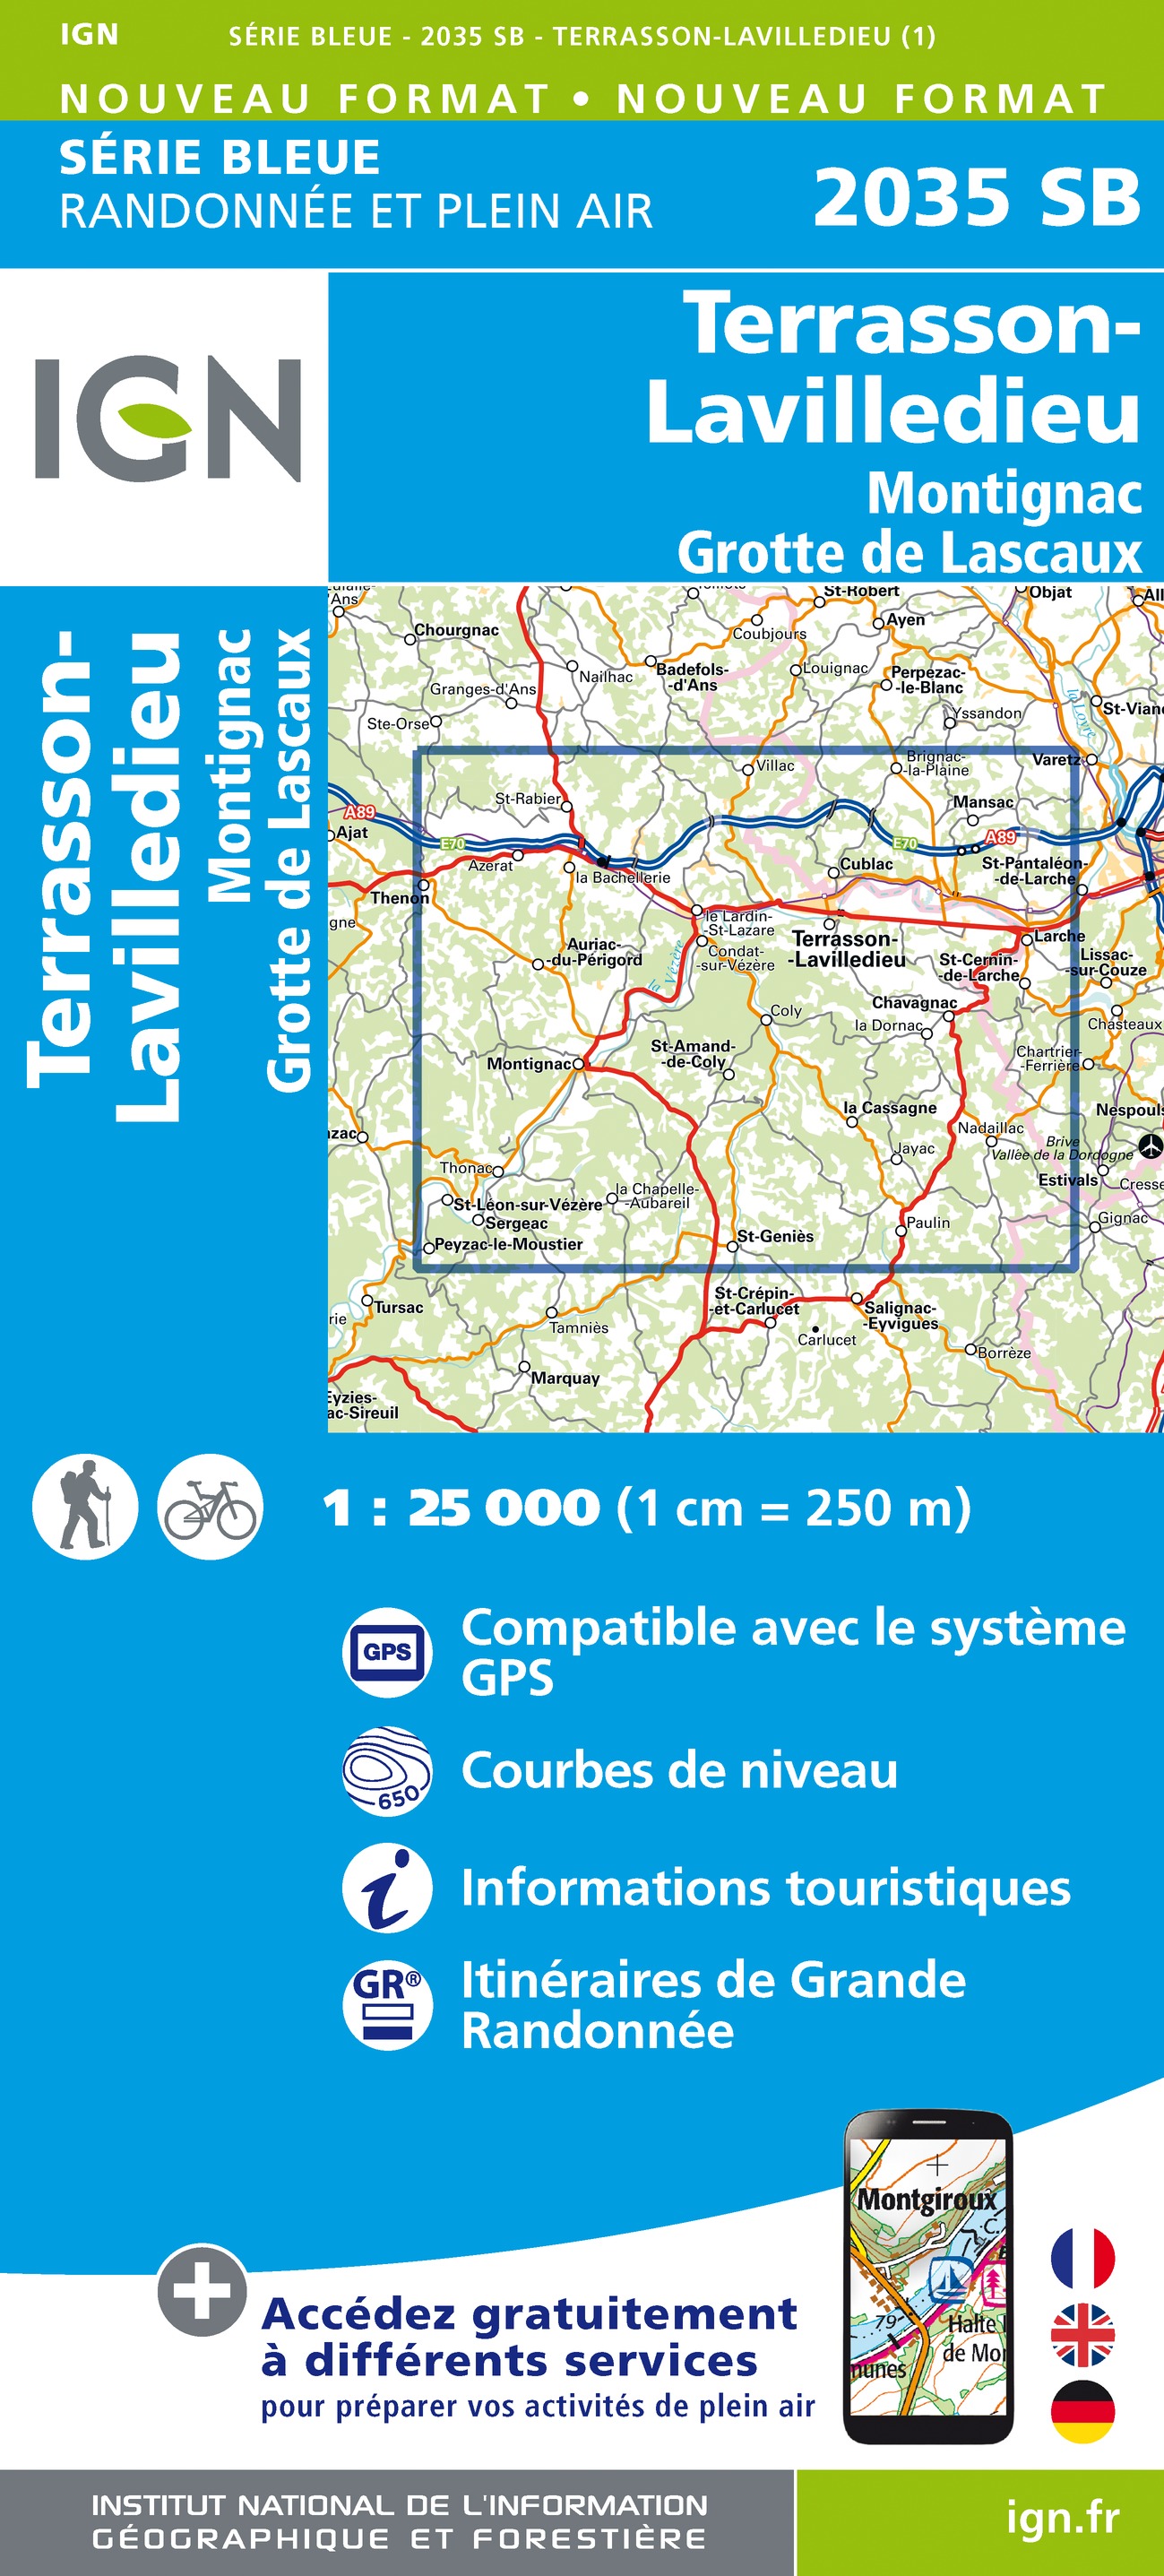 Online bestellen: Wandelkaart - Topografische kaart 2035SB Terrasson-Lavilledieu, Montignac, Grotte de Lascaux | IGN - Institut Géographique National